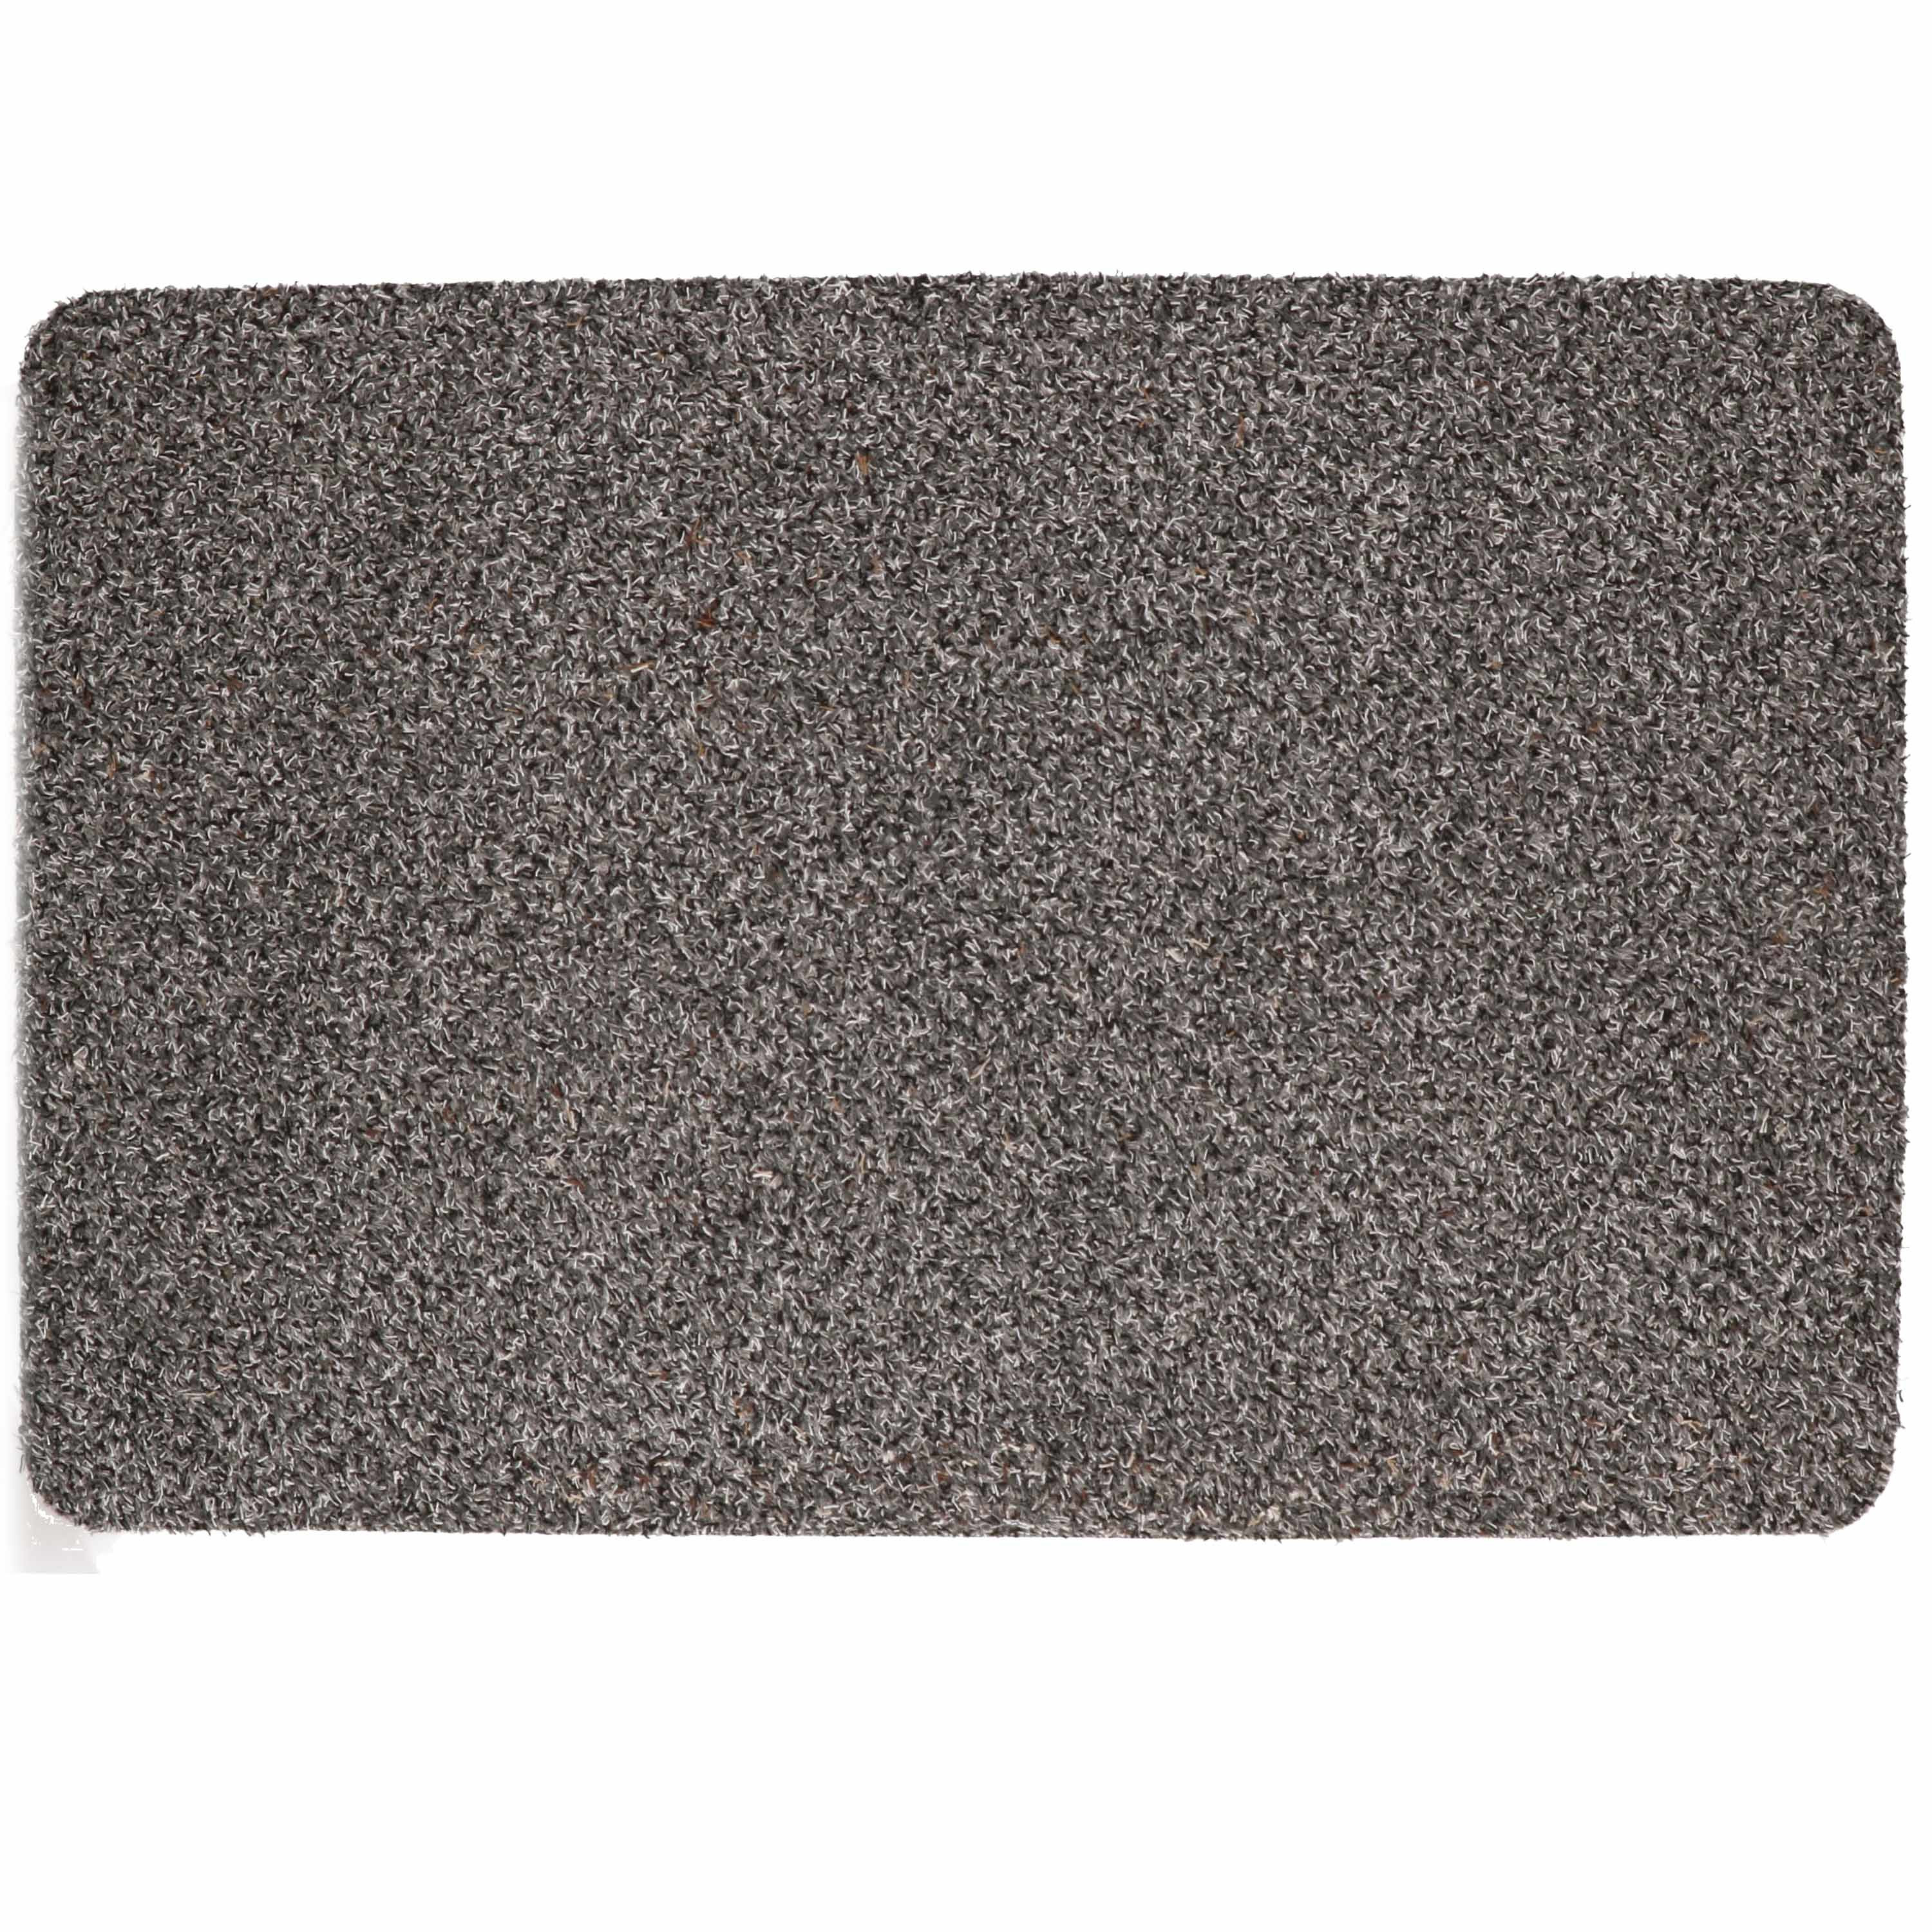 Anti slip deurmat-schoonloopmat pvc grijs extra absorberend 60 x 40 cm voor binnen